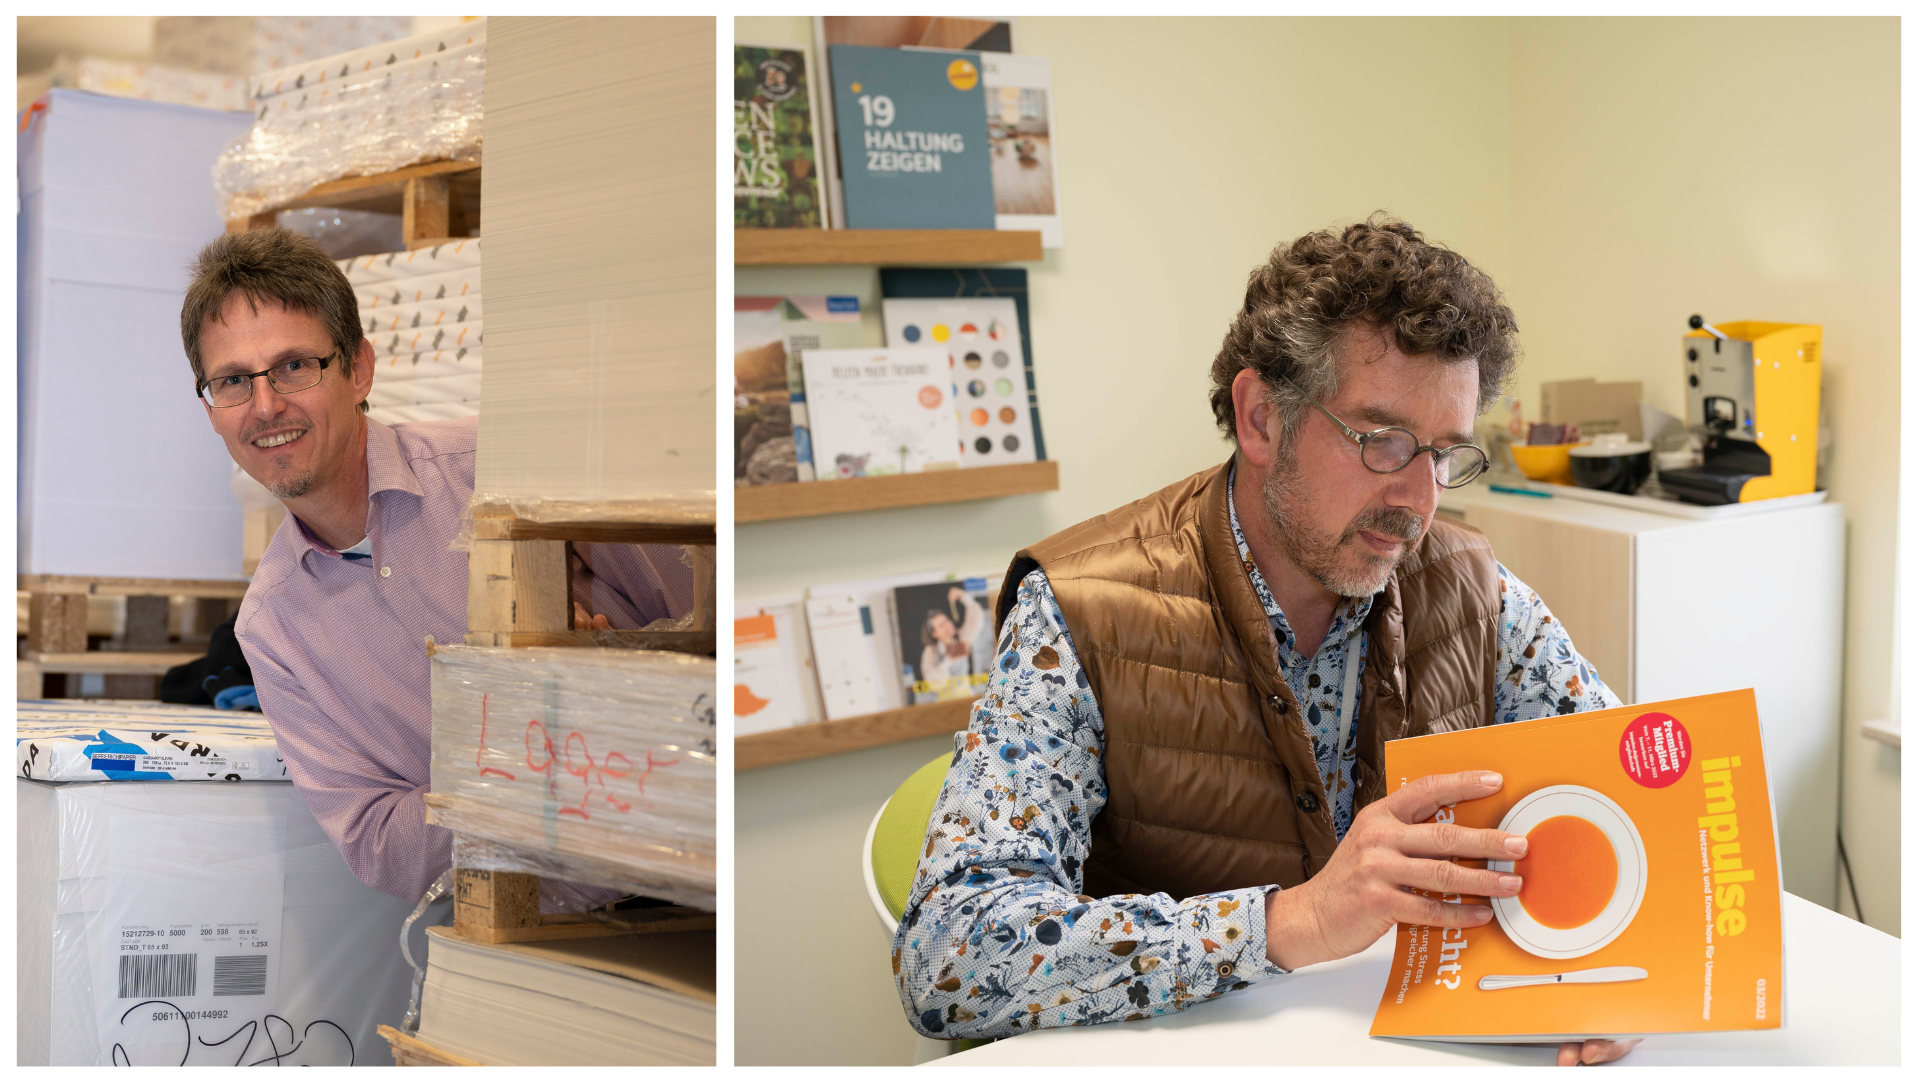 Zwei Fotos nebeneinander: Auf dem linken schaut ein Mann hinter einem Papierstaple hervor. Auf dem rechten Bild ist Ralf Lokay zu sehen. Er sitzt an einem Tisch und blättert in einem Magazin. Das Cover ist orange und darauf steht "impulse" 